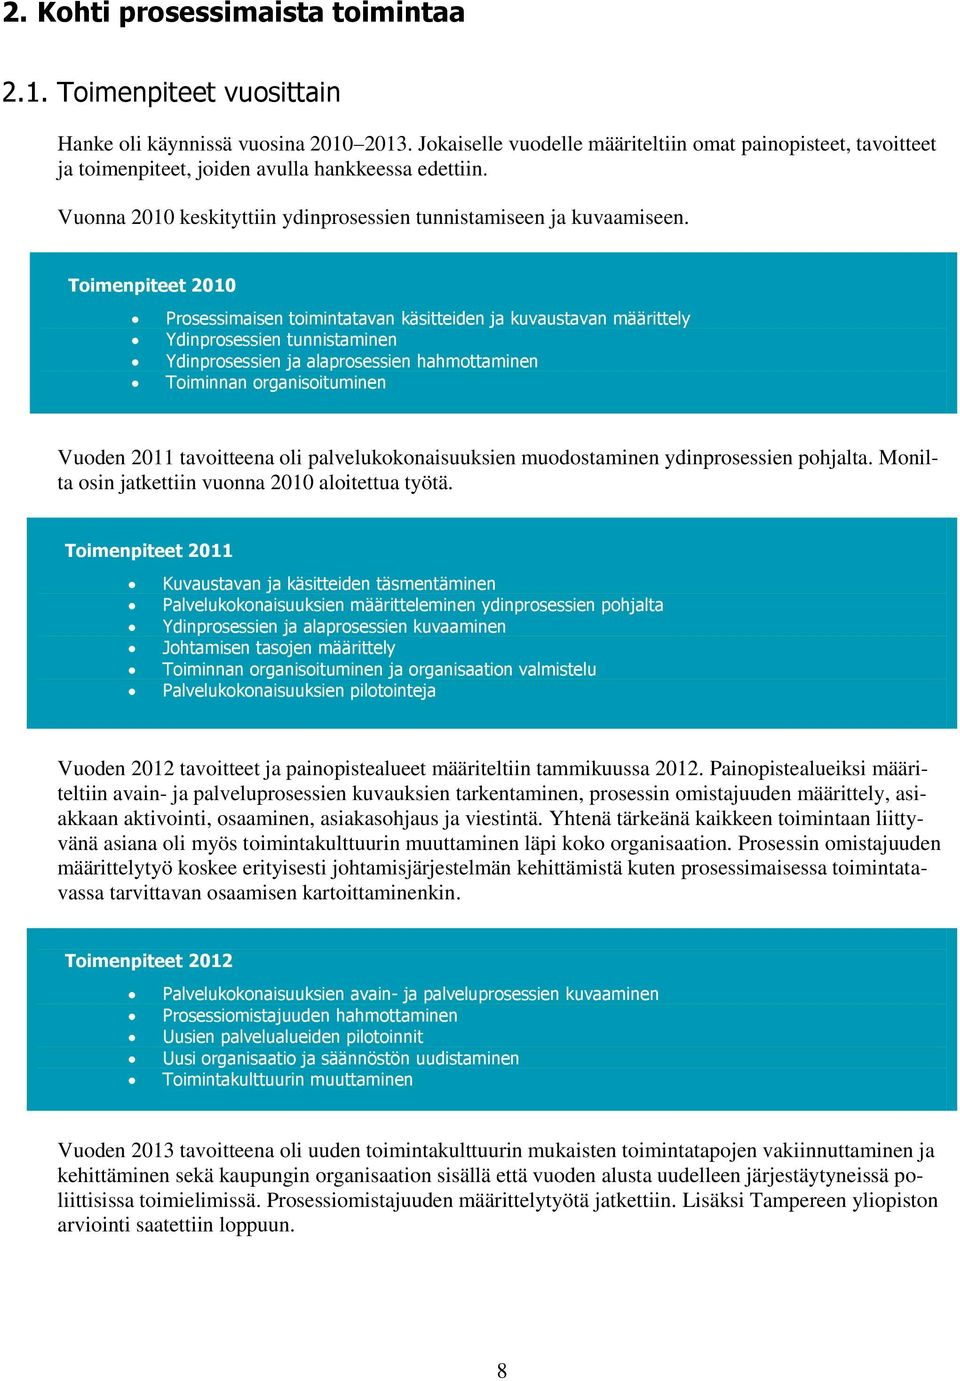 Timenpiteet 2010 Prsessimaisen timintatavan käsitteiden ja kuvaustavan määrittely Ydinprsessien tunnistaminen Ydinprsessien ja alaprsessien hahmttaminen Timinnan rganisituminen Vuden 2011 tavitteena